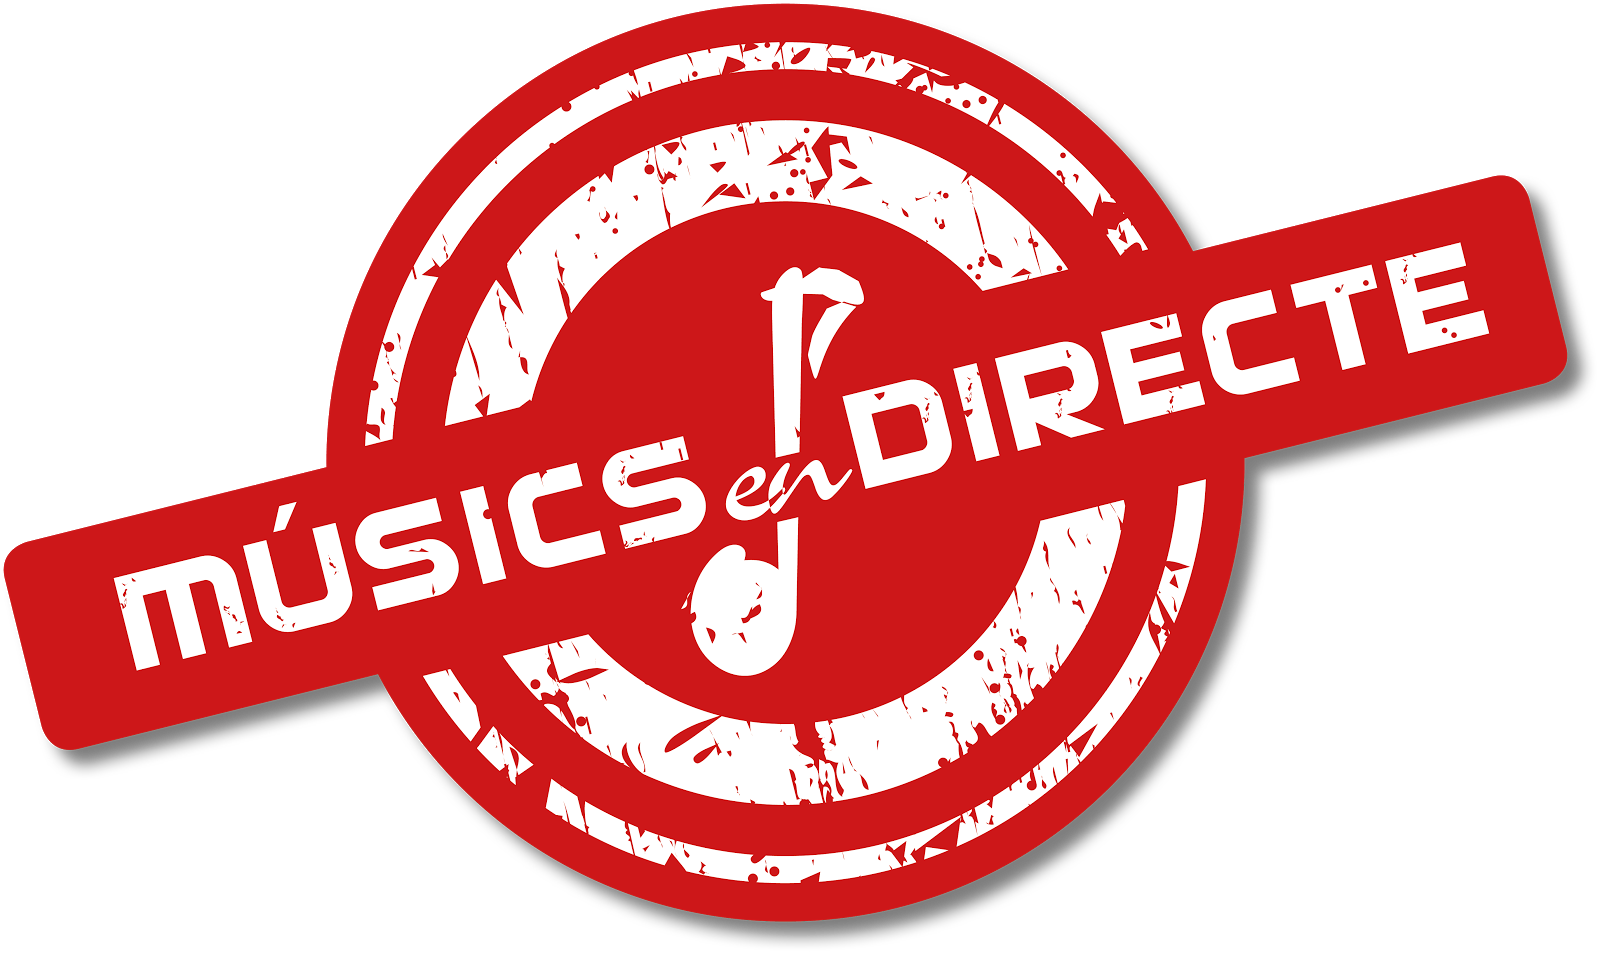 Músics en Directe